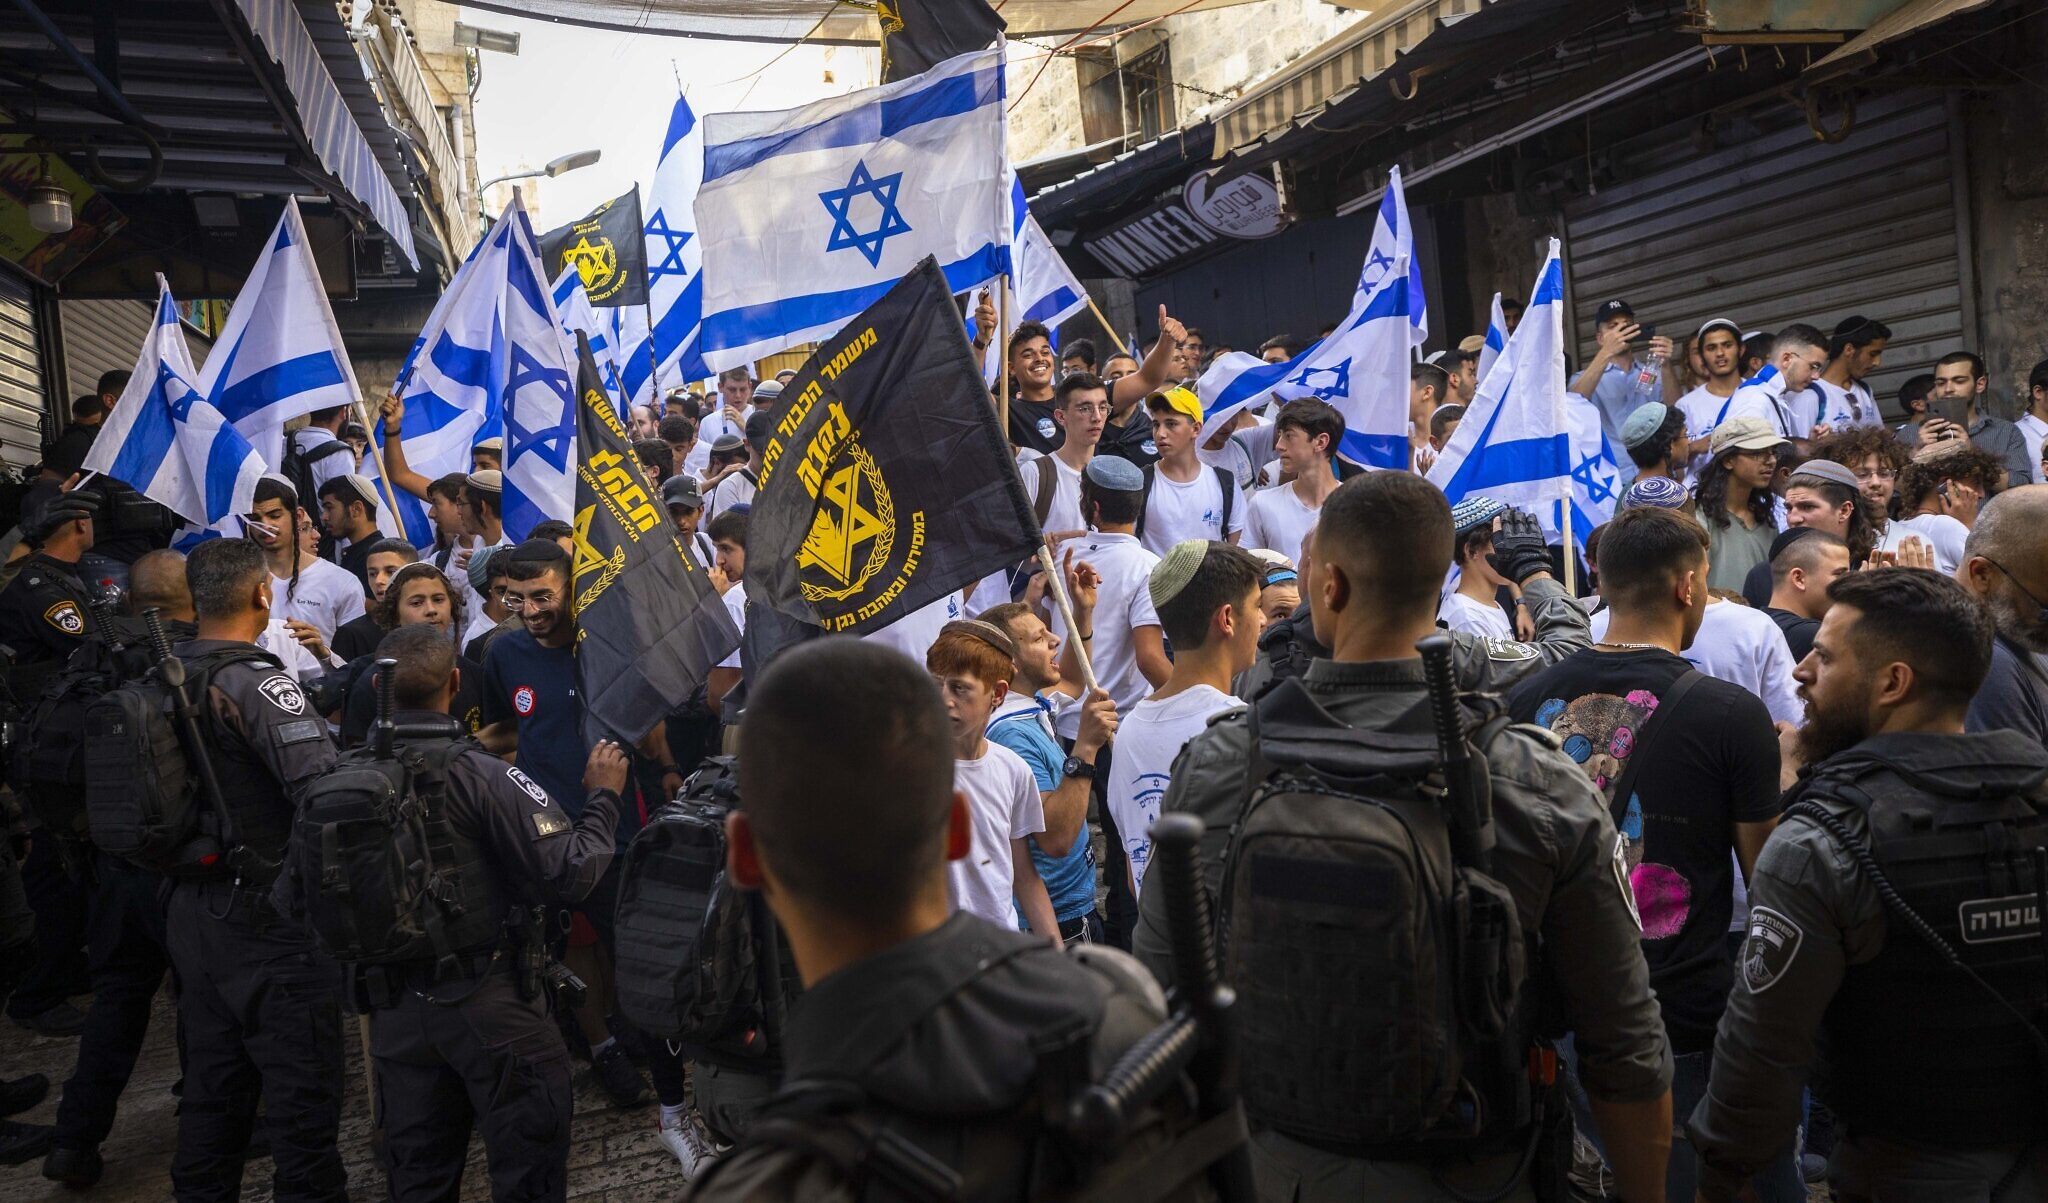 L'estrema destra israeliana marcia sul Monte del Tempio: protesta l'Anp